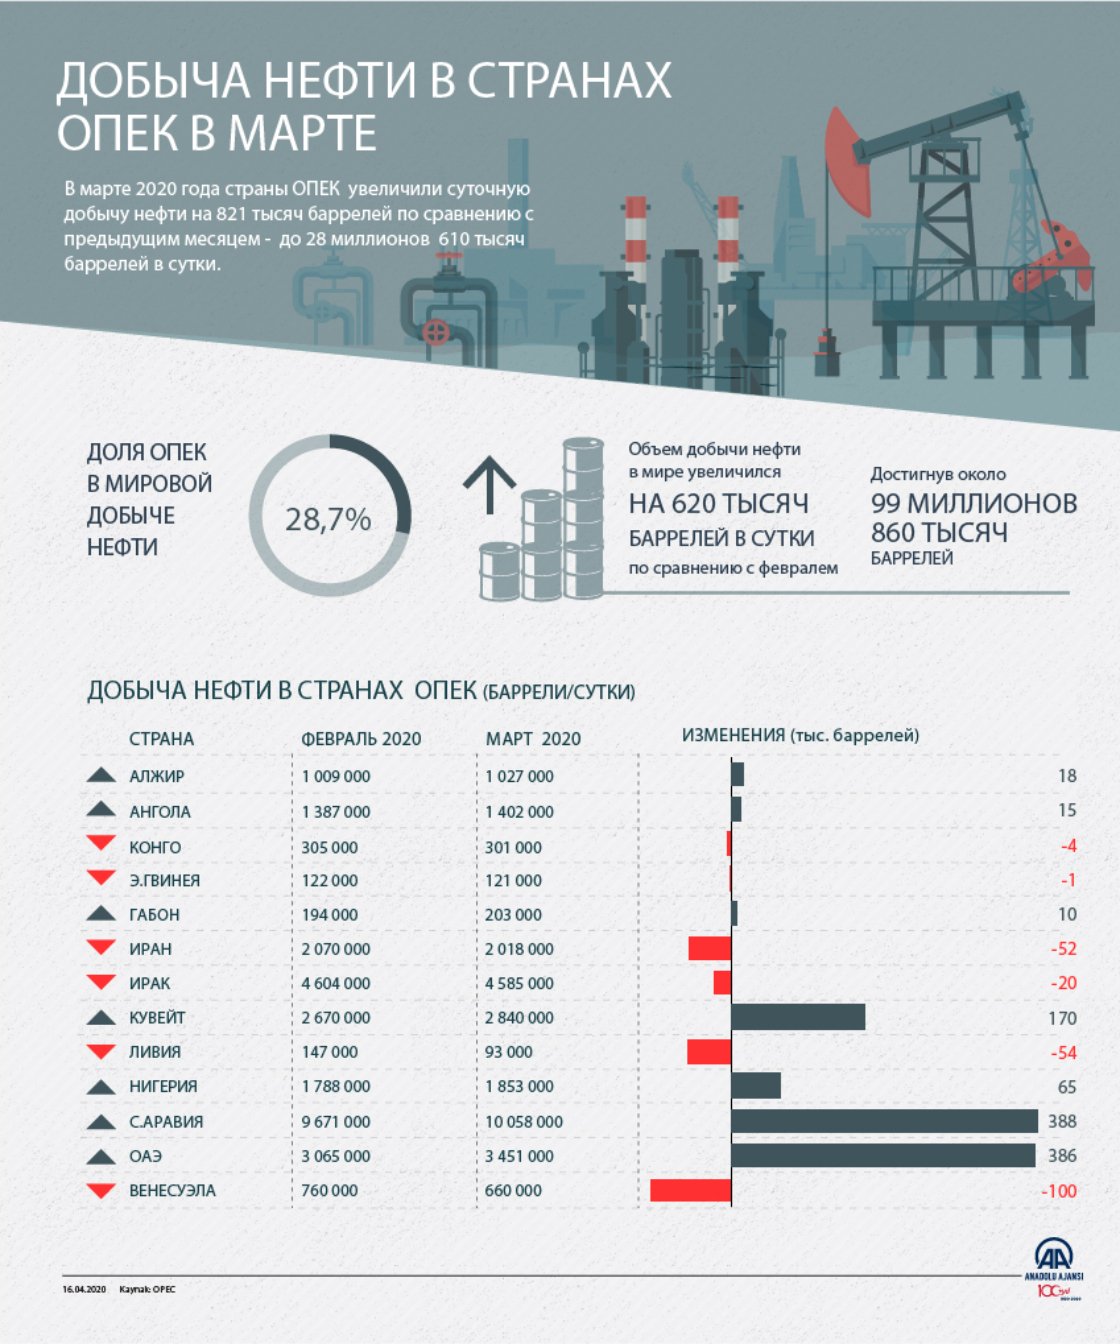 Добыча нефти в странах OPEC в марте увеличилась